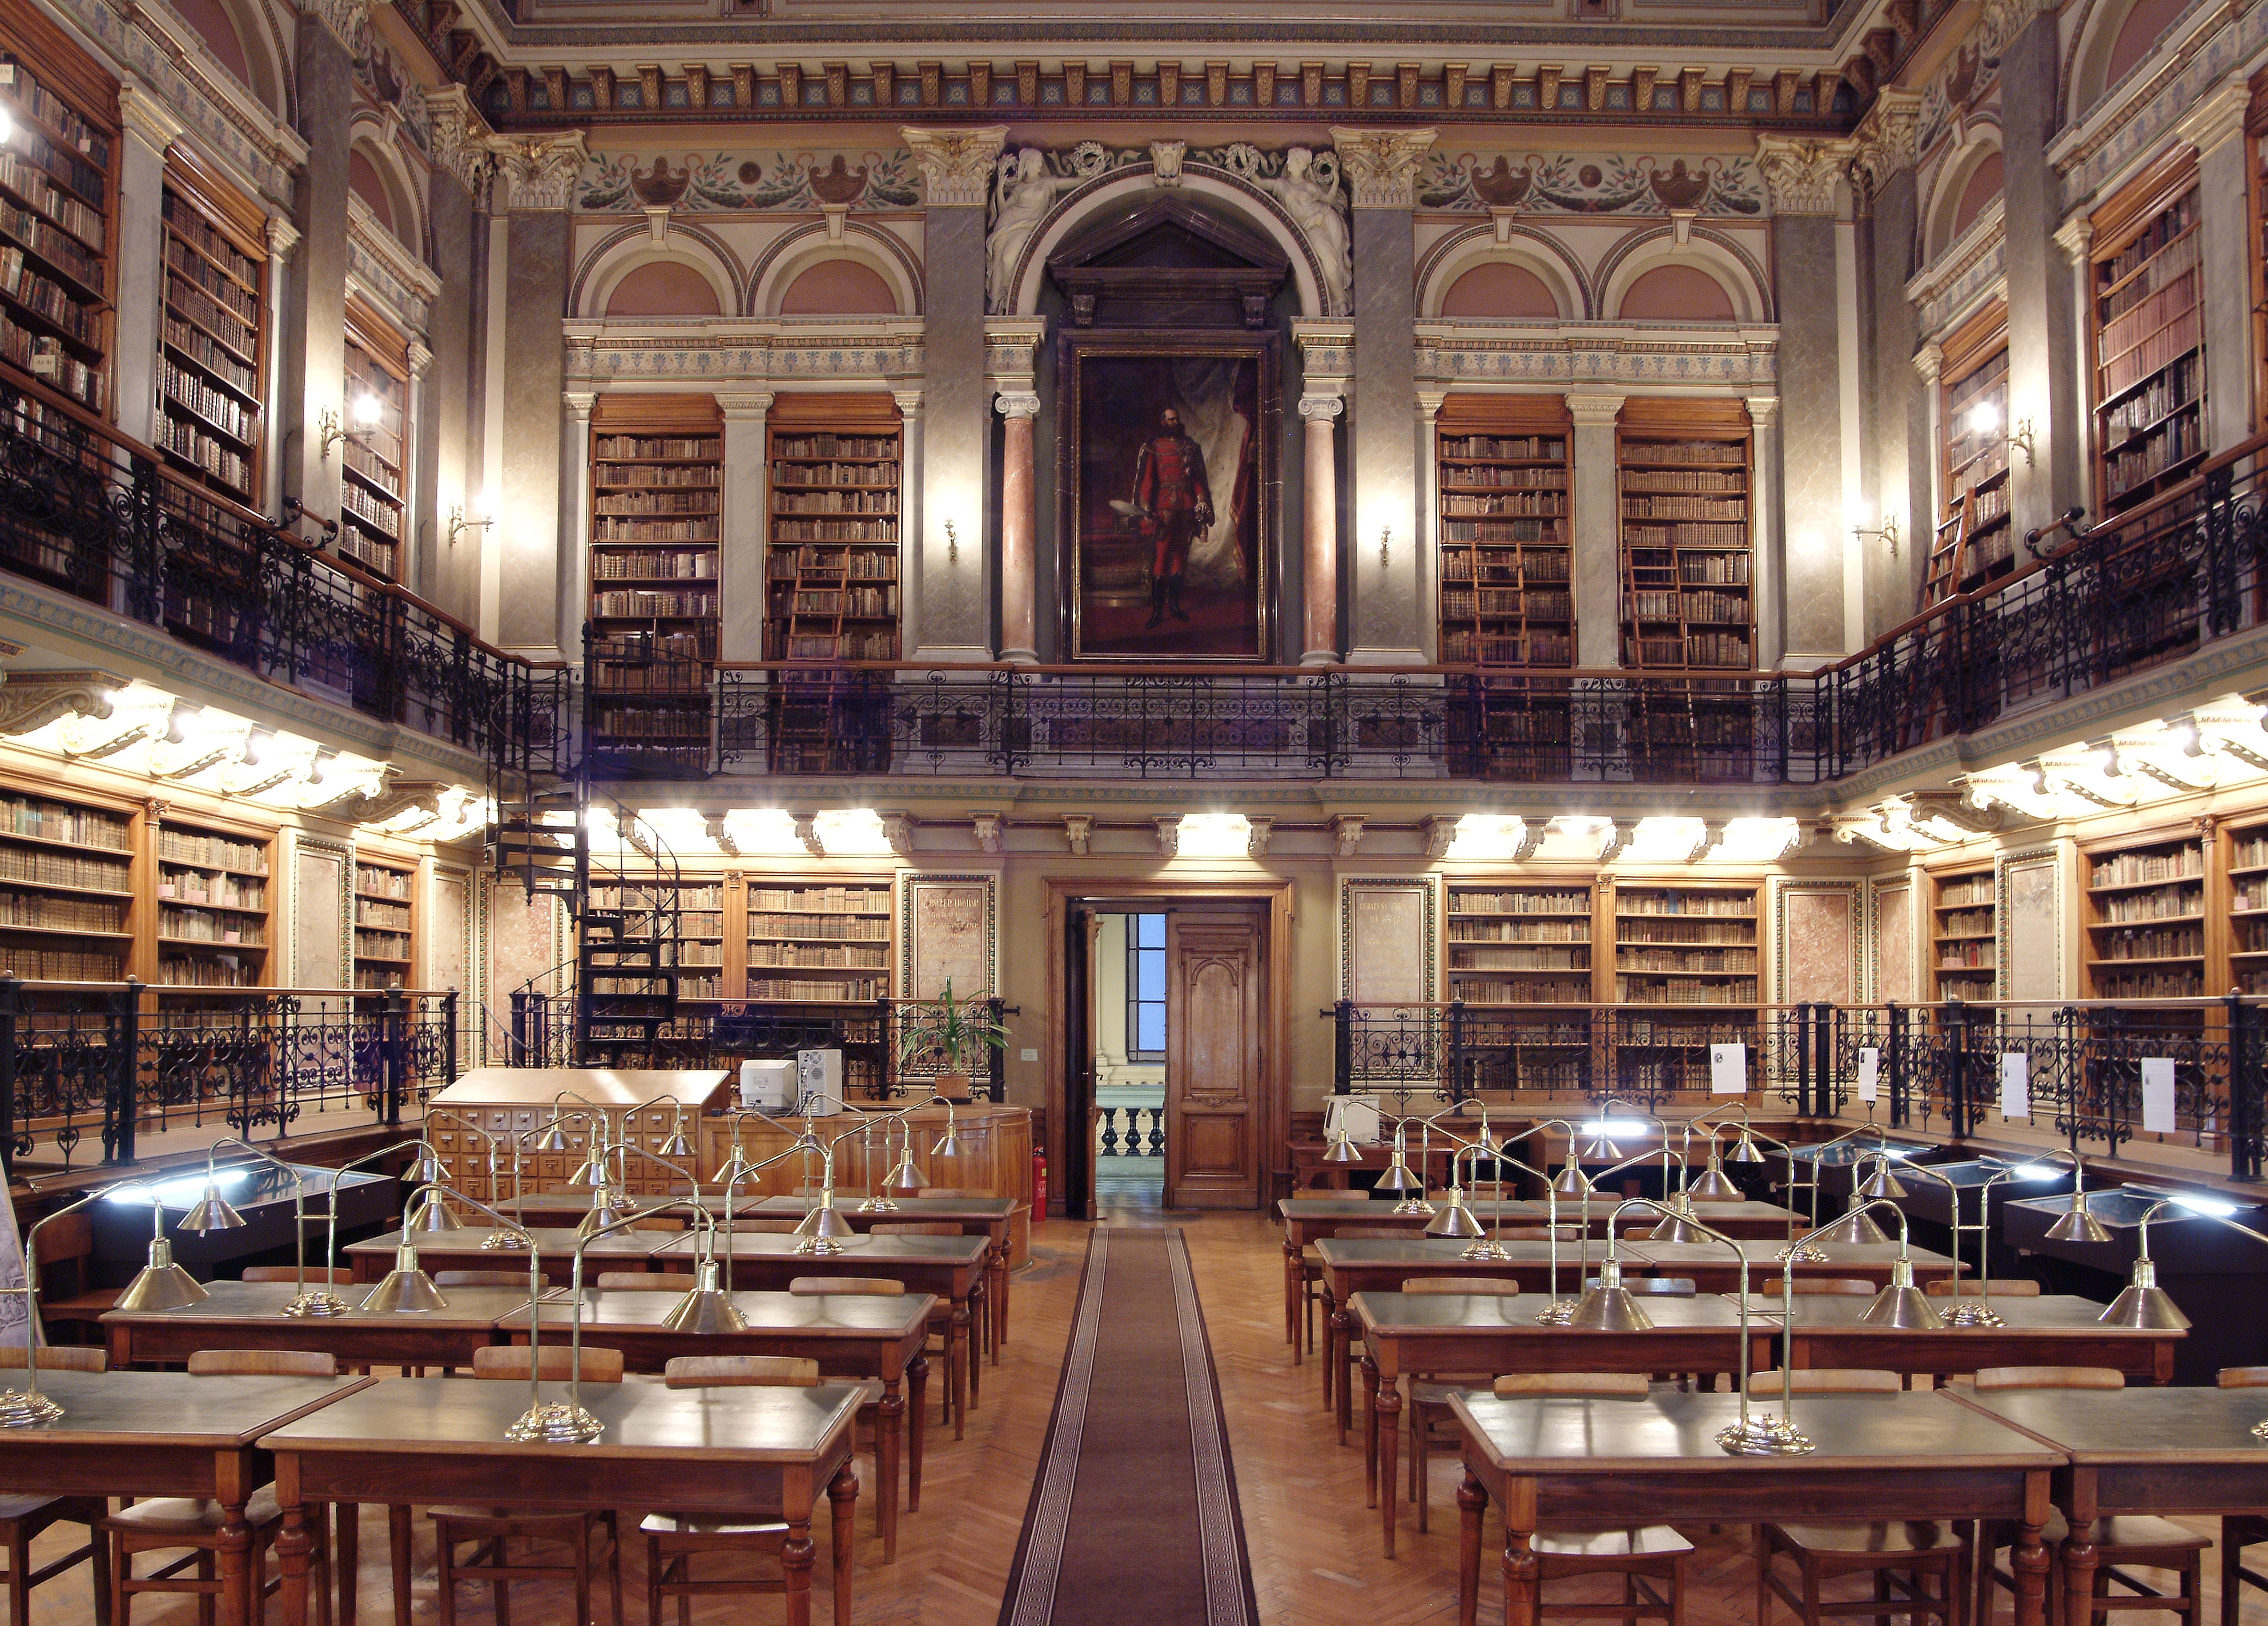 A könyvtár mint épülettípus klasszifikálódása a 19. században